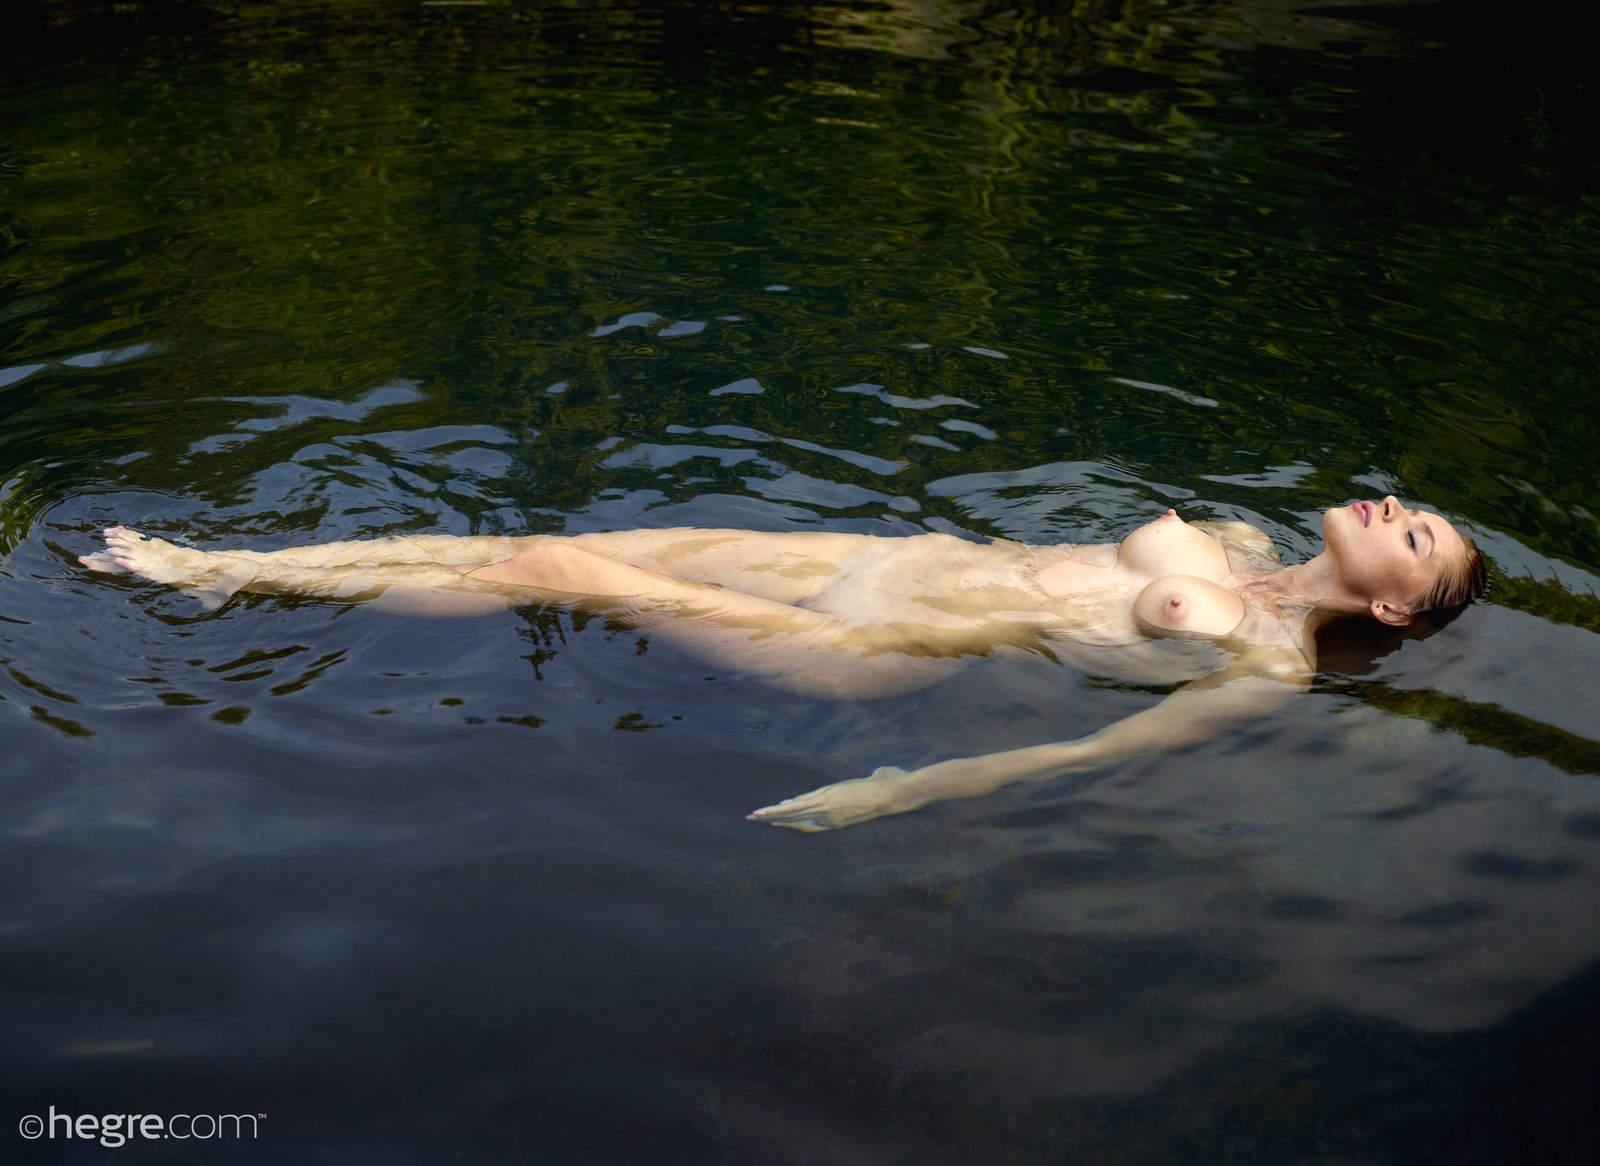 Голая девушка плавает в воде - фото.